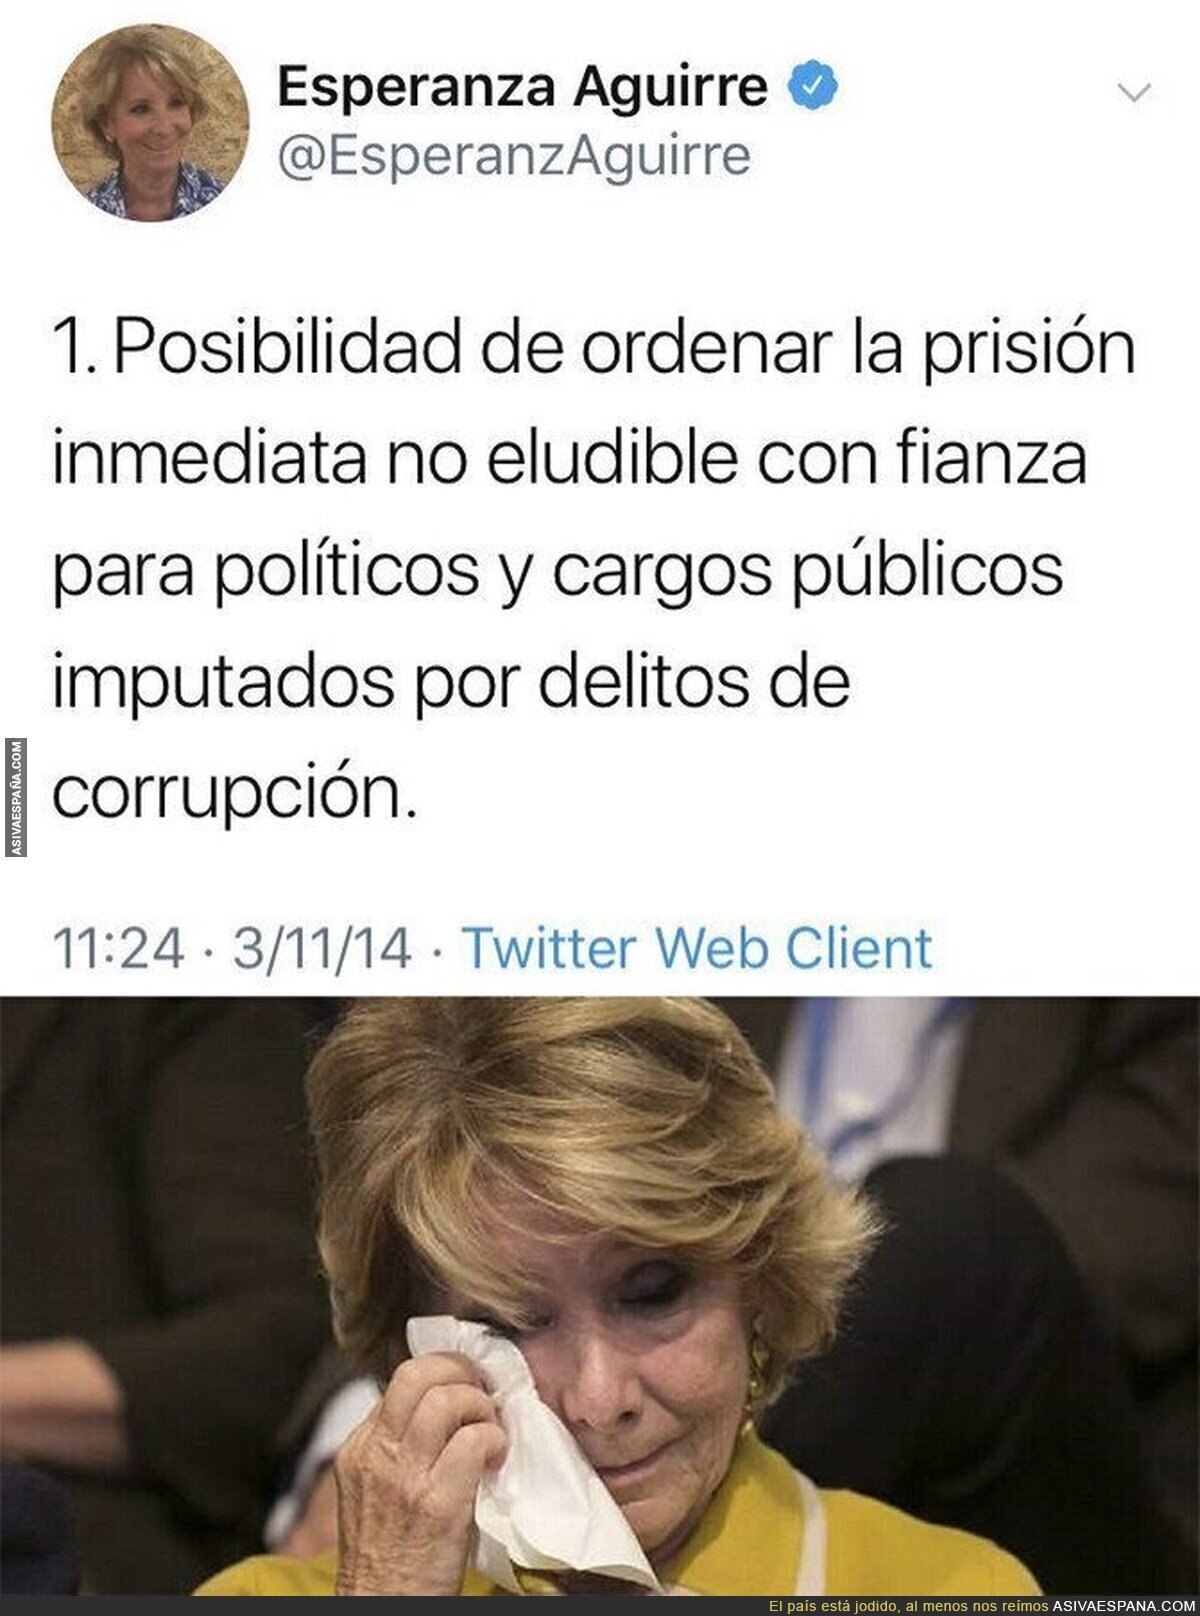 Esperanza Aguirre ya está tardando en cumplir su palabra